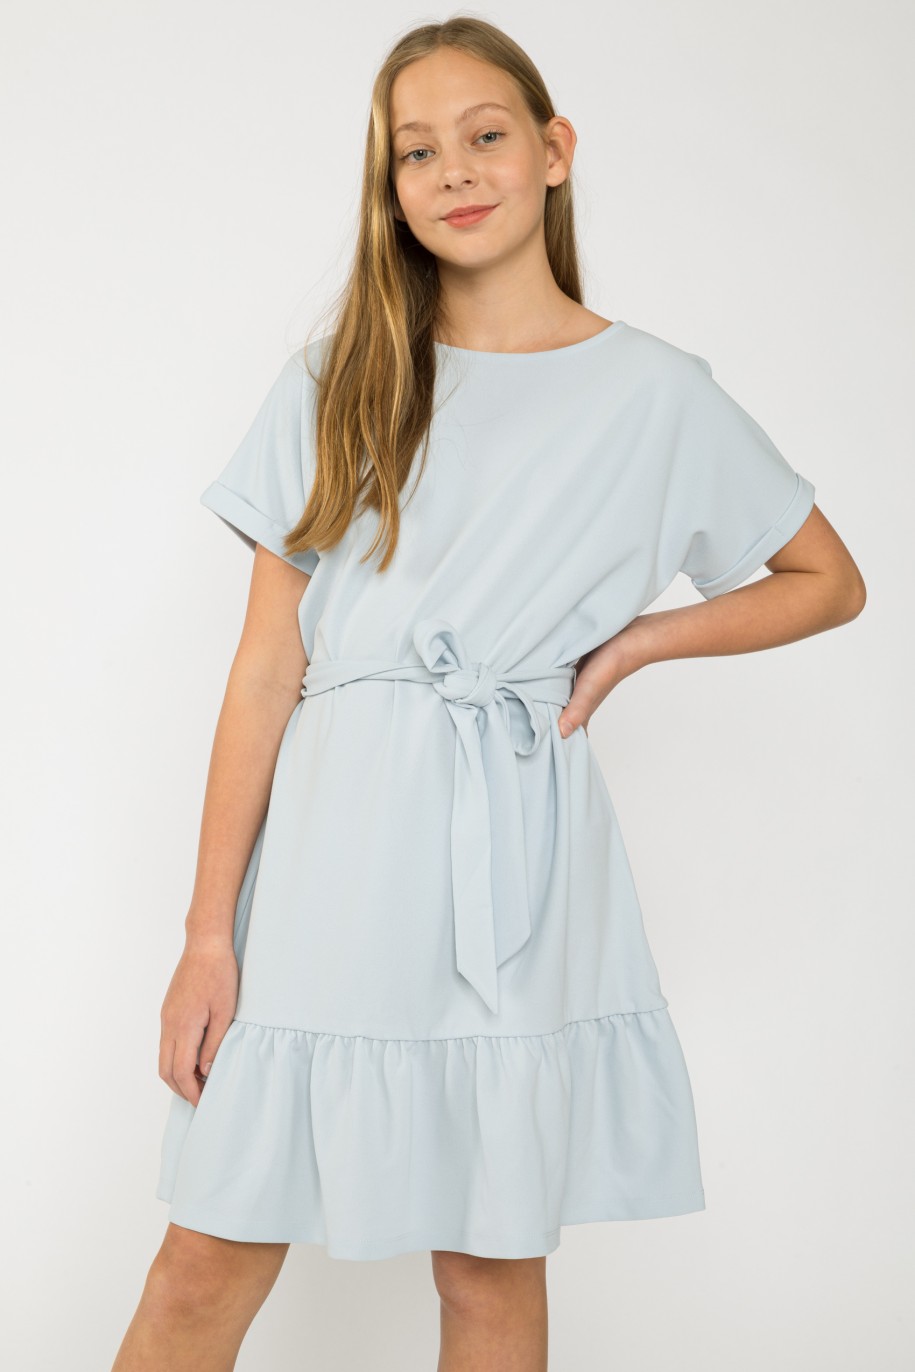 Błękitna sukienka z falbanką dla dziewczyny - 41638